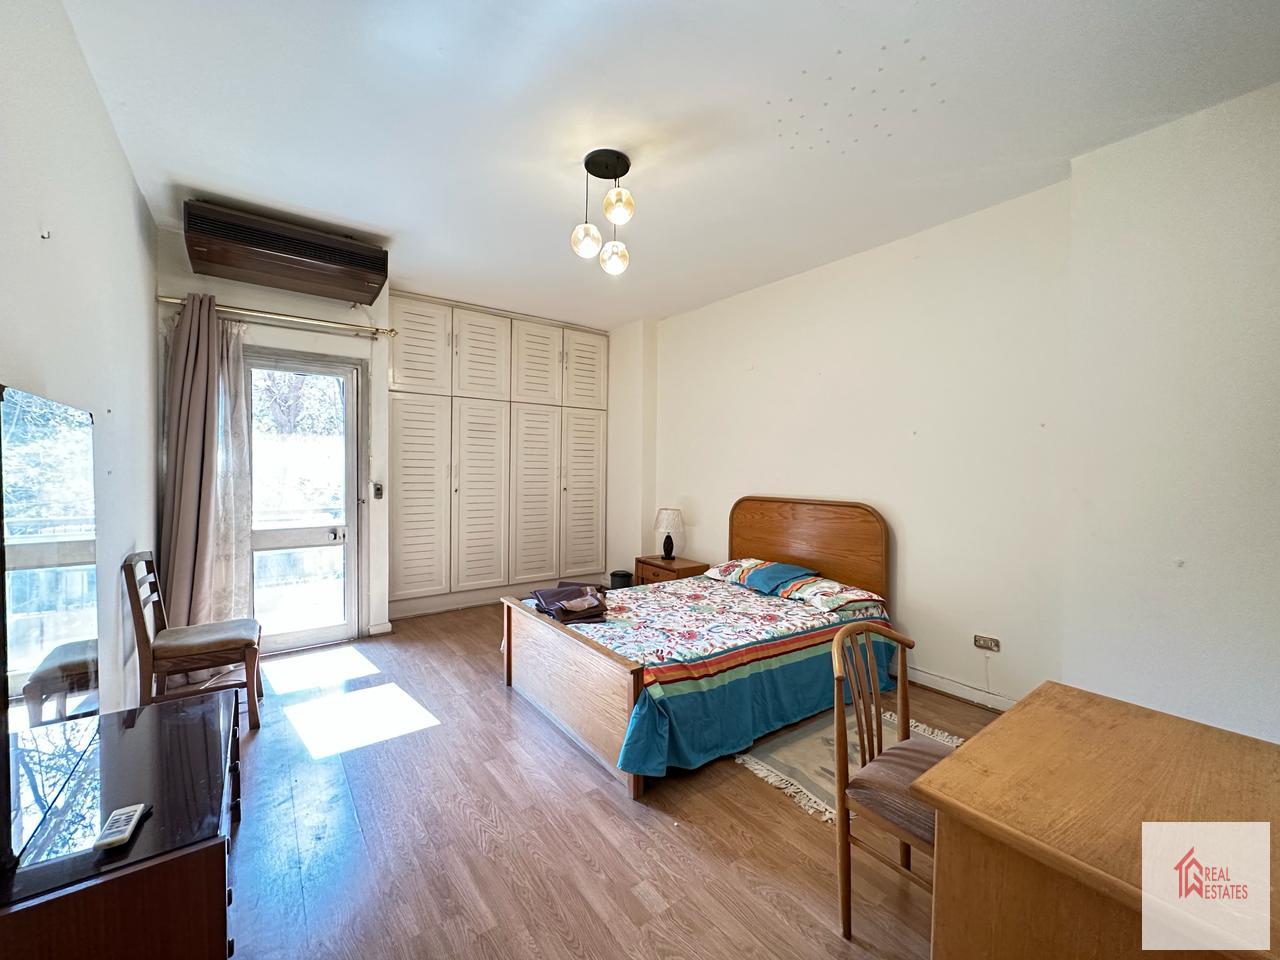 Maadi Sarayat, Kahire, Mısır'da kiralık daire, 3 yatak odası, 2 banyo, 1 ebeveyn, mobilyalı balkon.